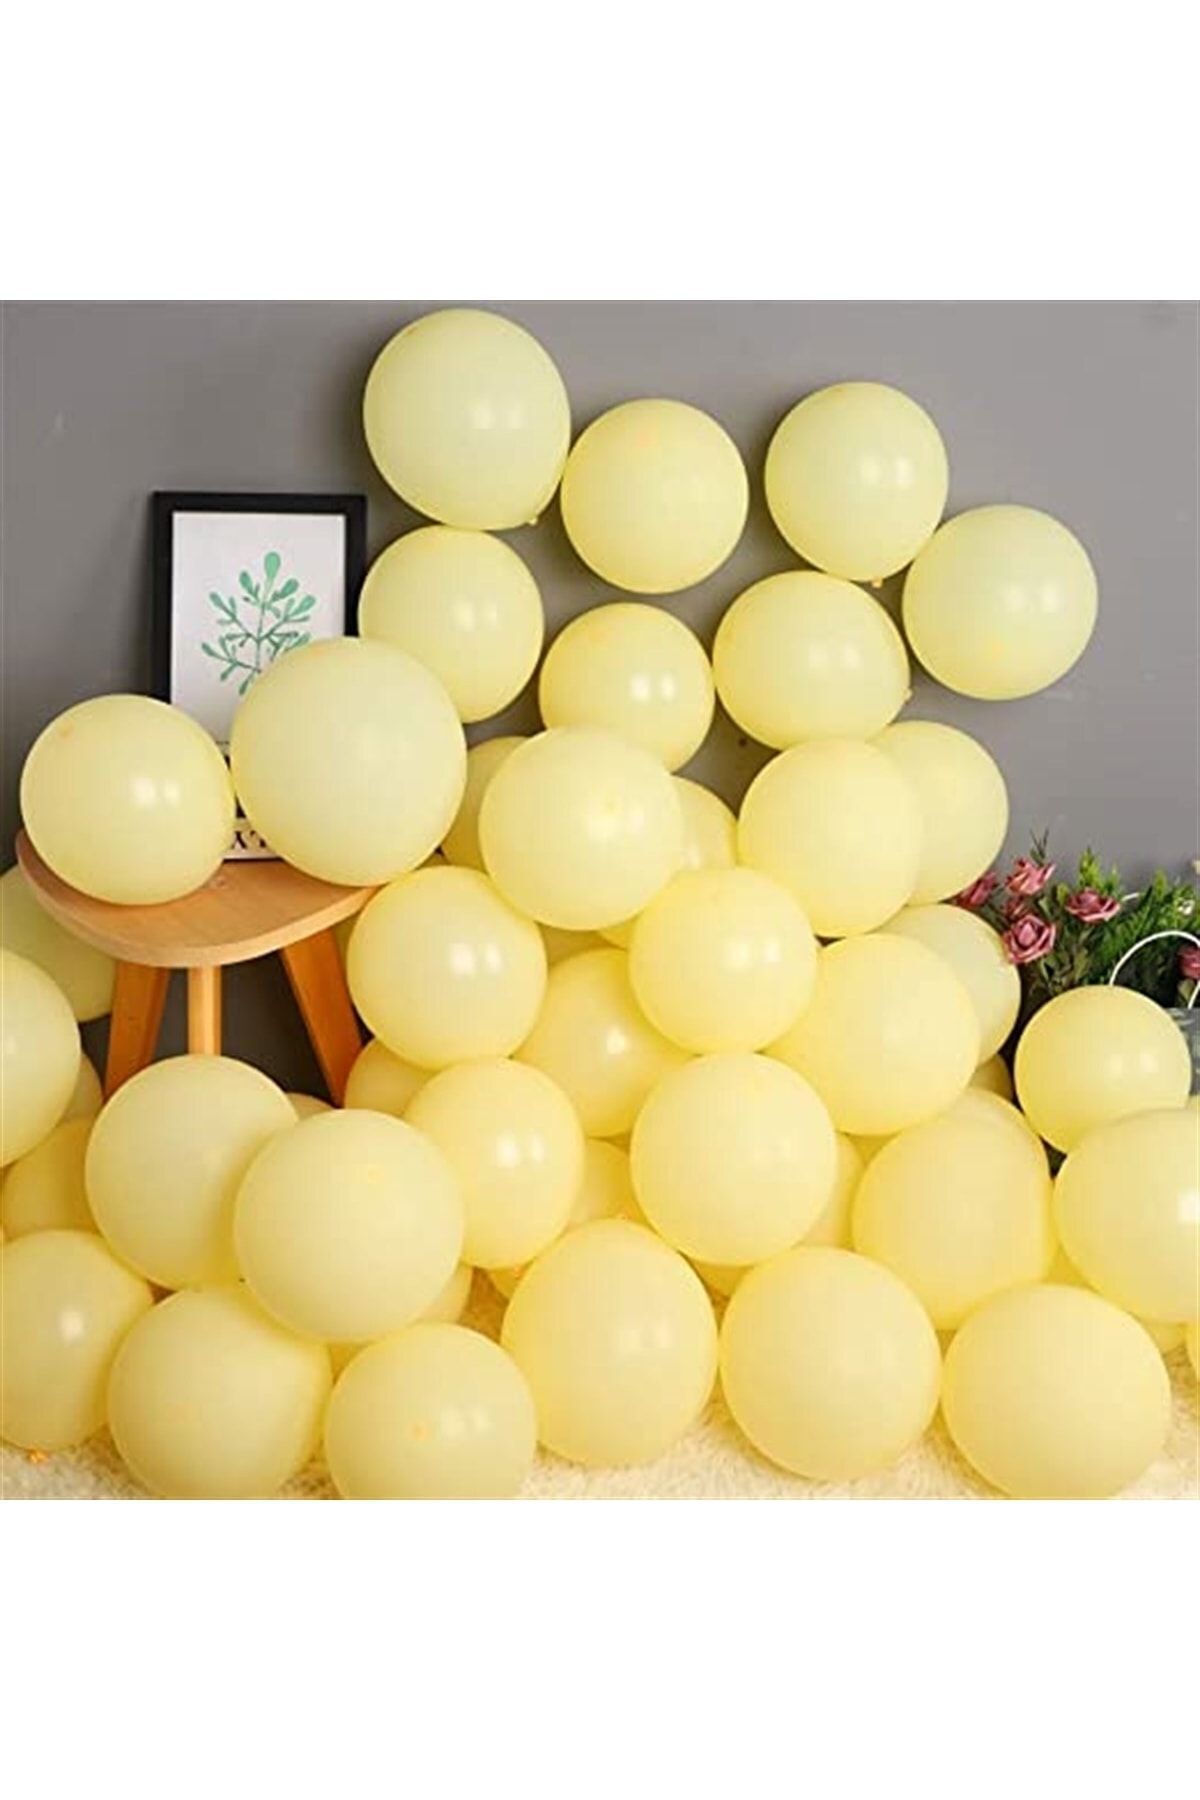 HKNYS 100 Adet Sarı Renk Soft Makaron Balon-+ Balon Zinciri Balon Bandı